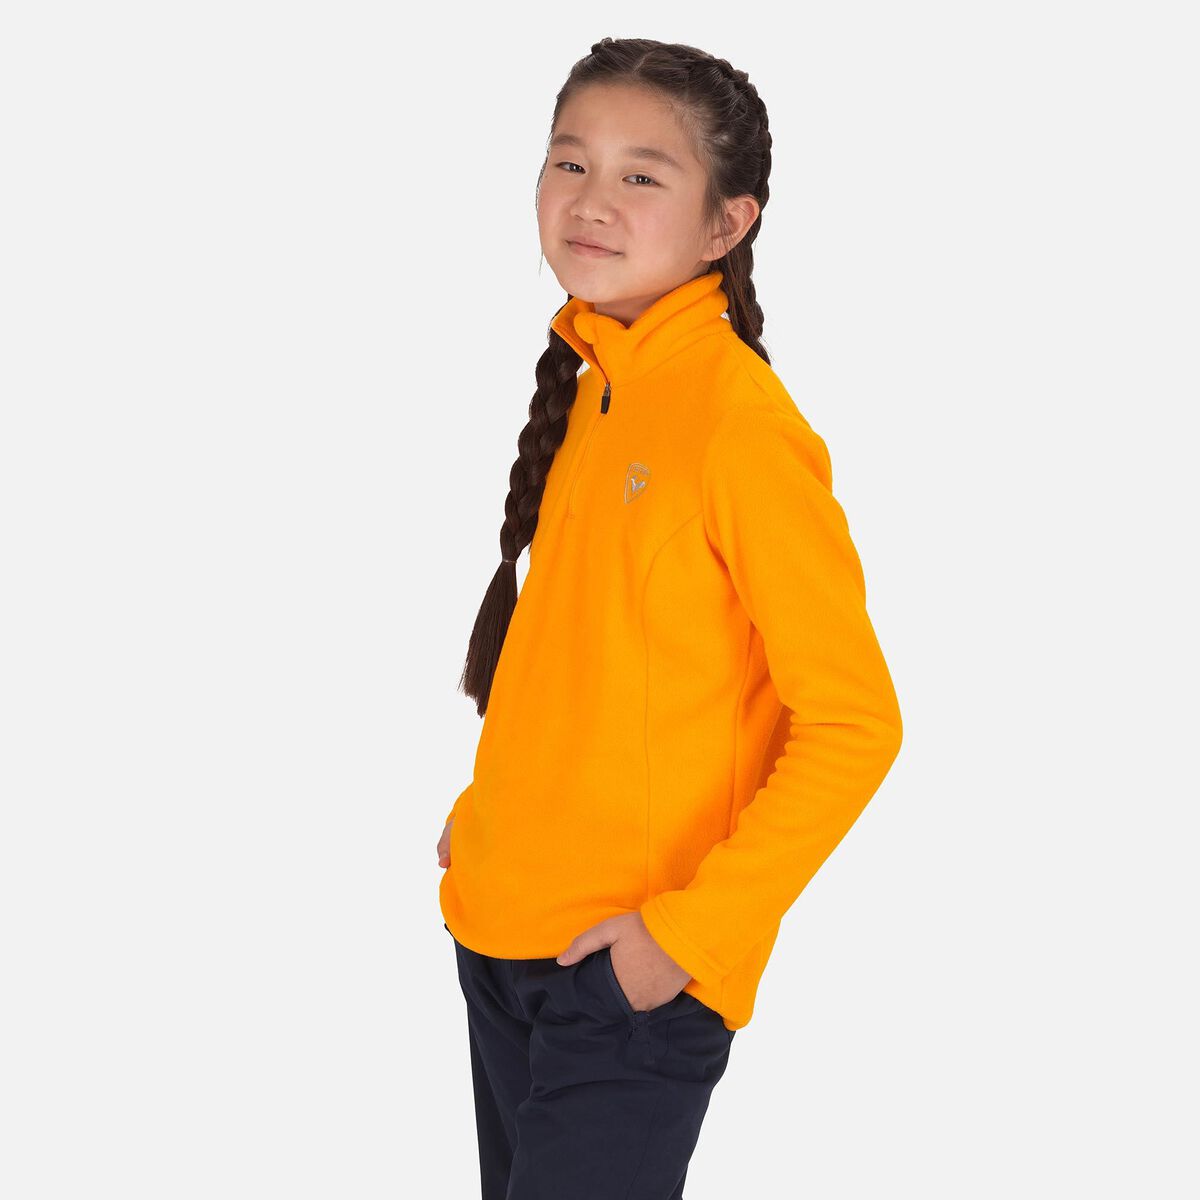 Rossignol Girls' Half-Zip Fleece Orange